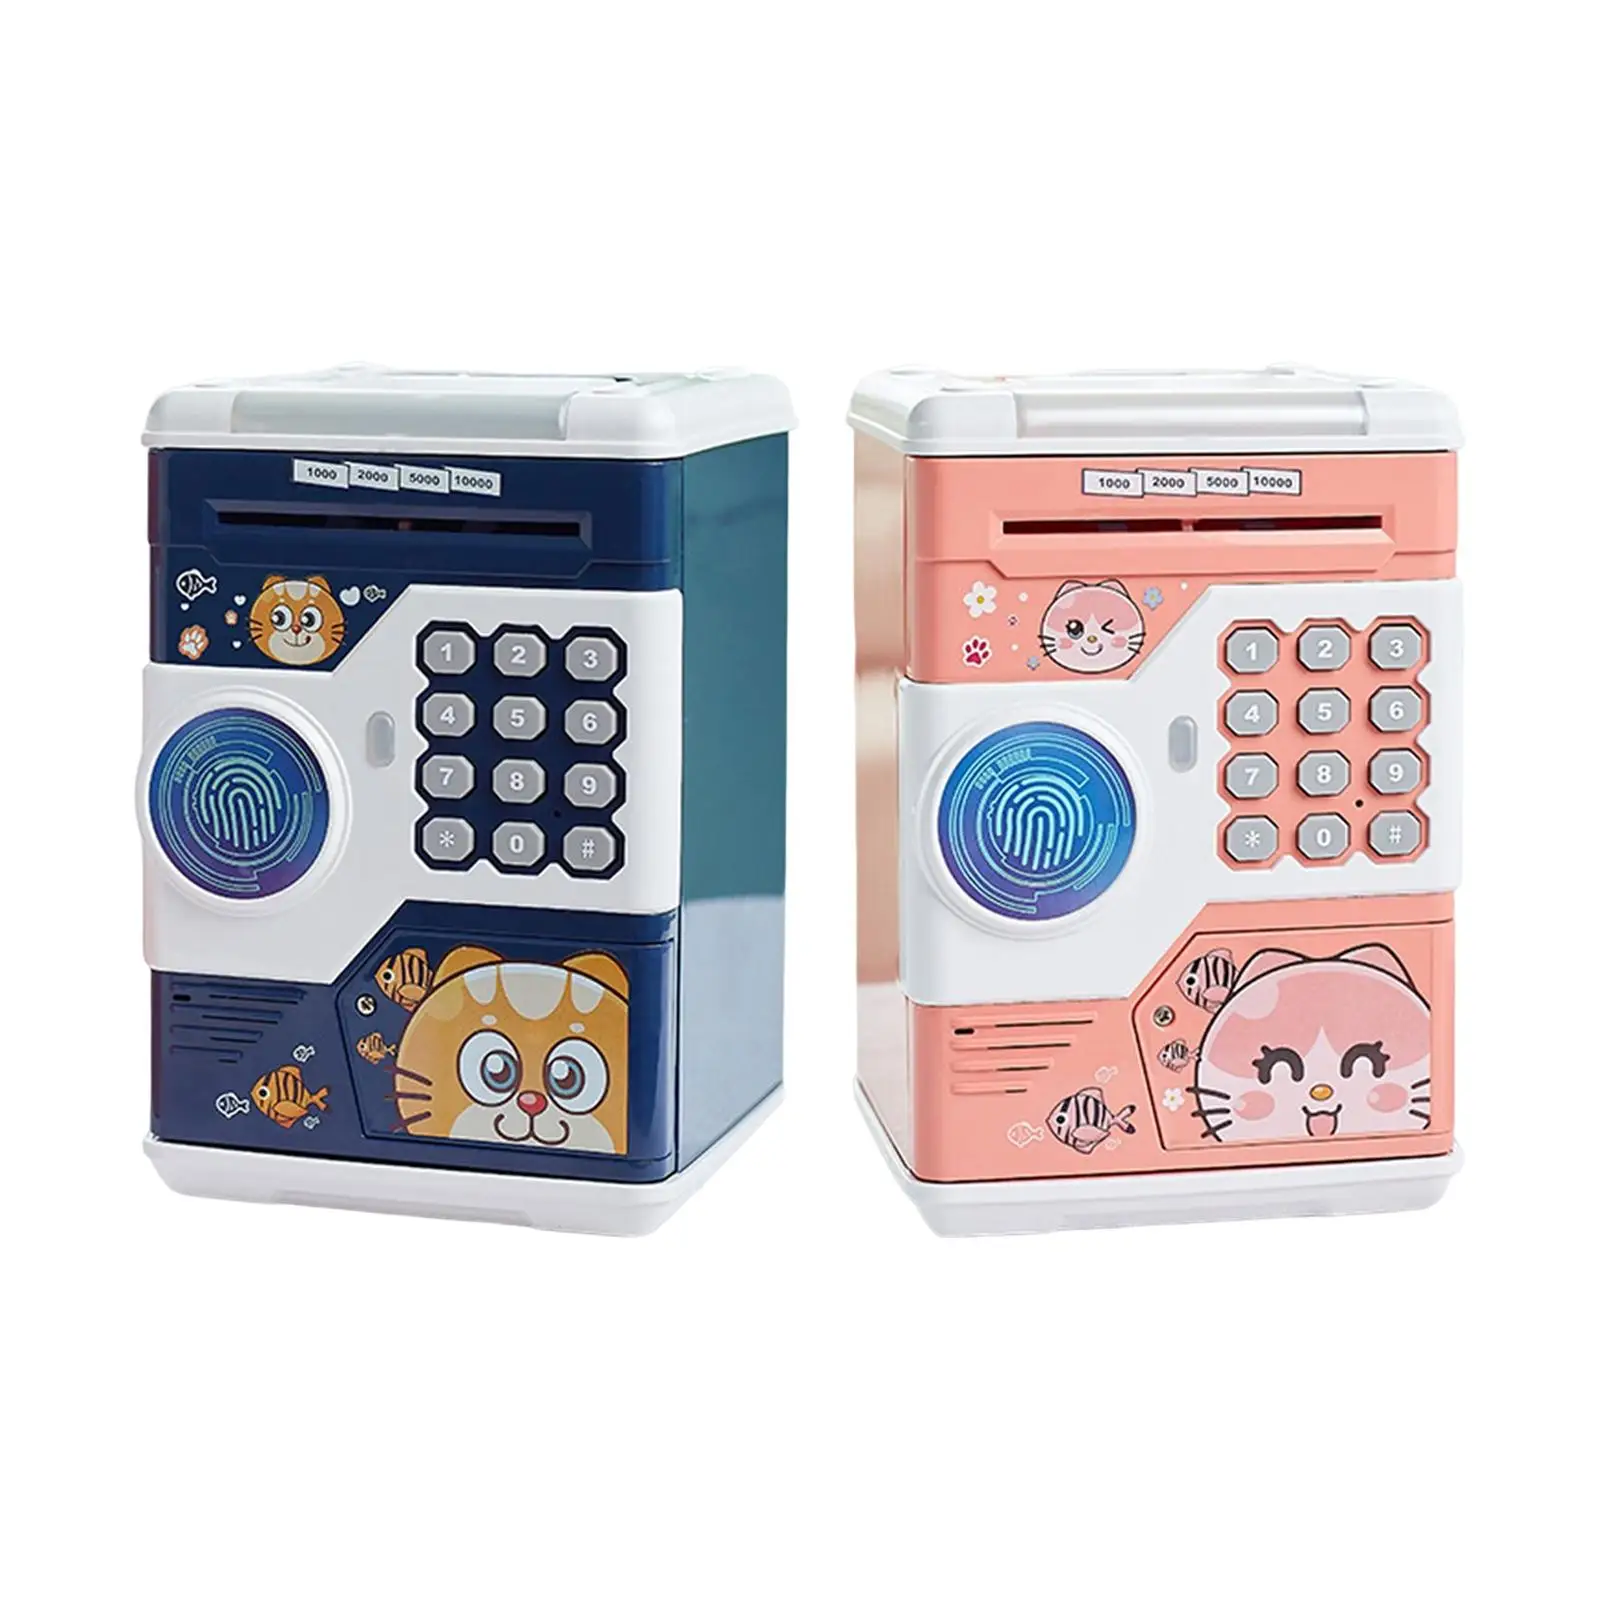  Bank Toy Fingerprint Password Code Lock    Saving Saving Bank Toy for Girls Birthday Gifts